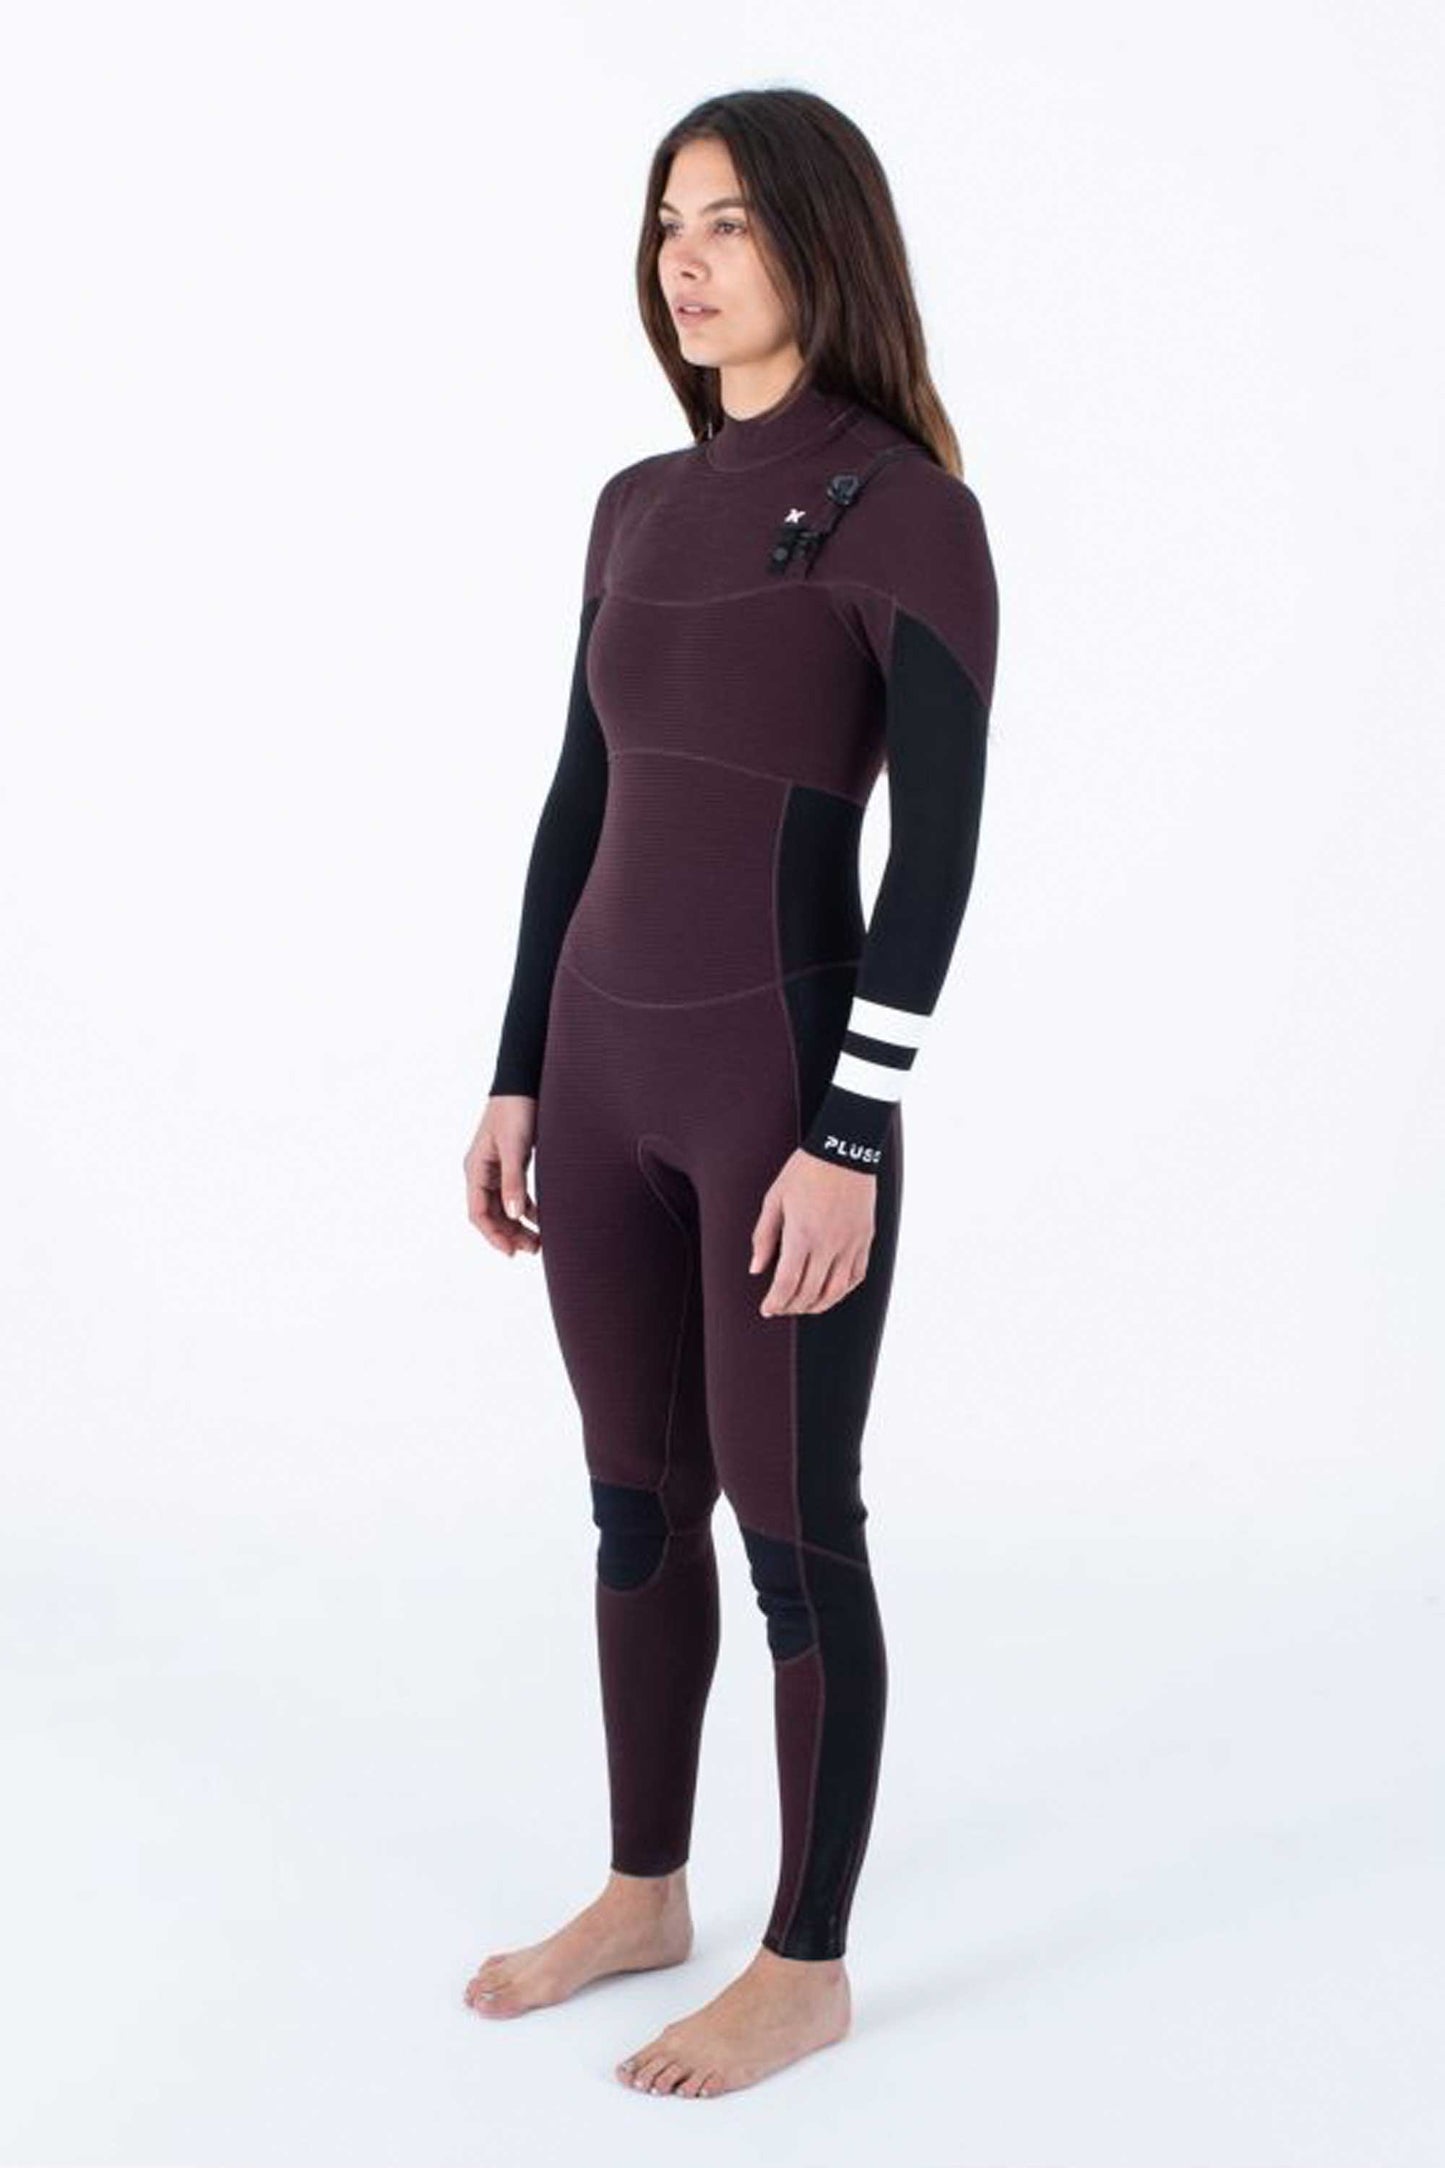 Hurley Advantage Plus 4/3mm Fullsuit Women's Wetsuit